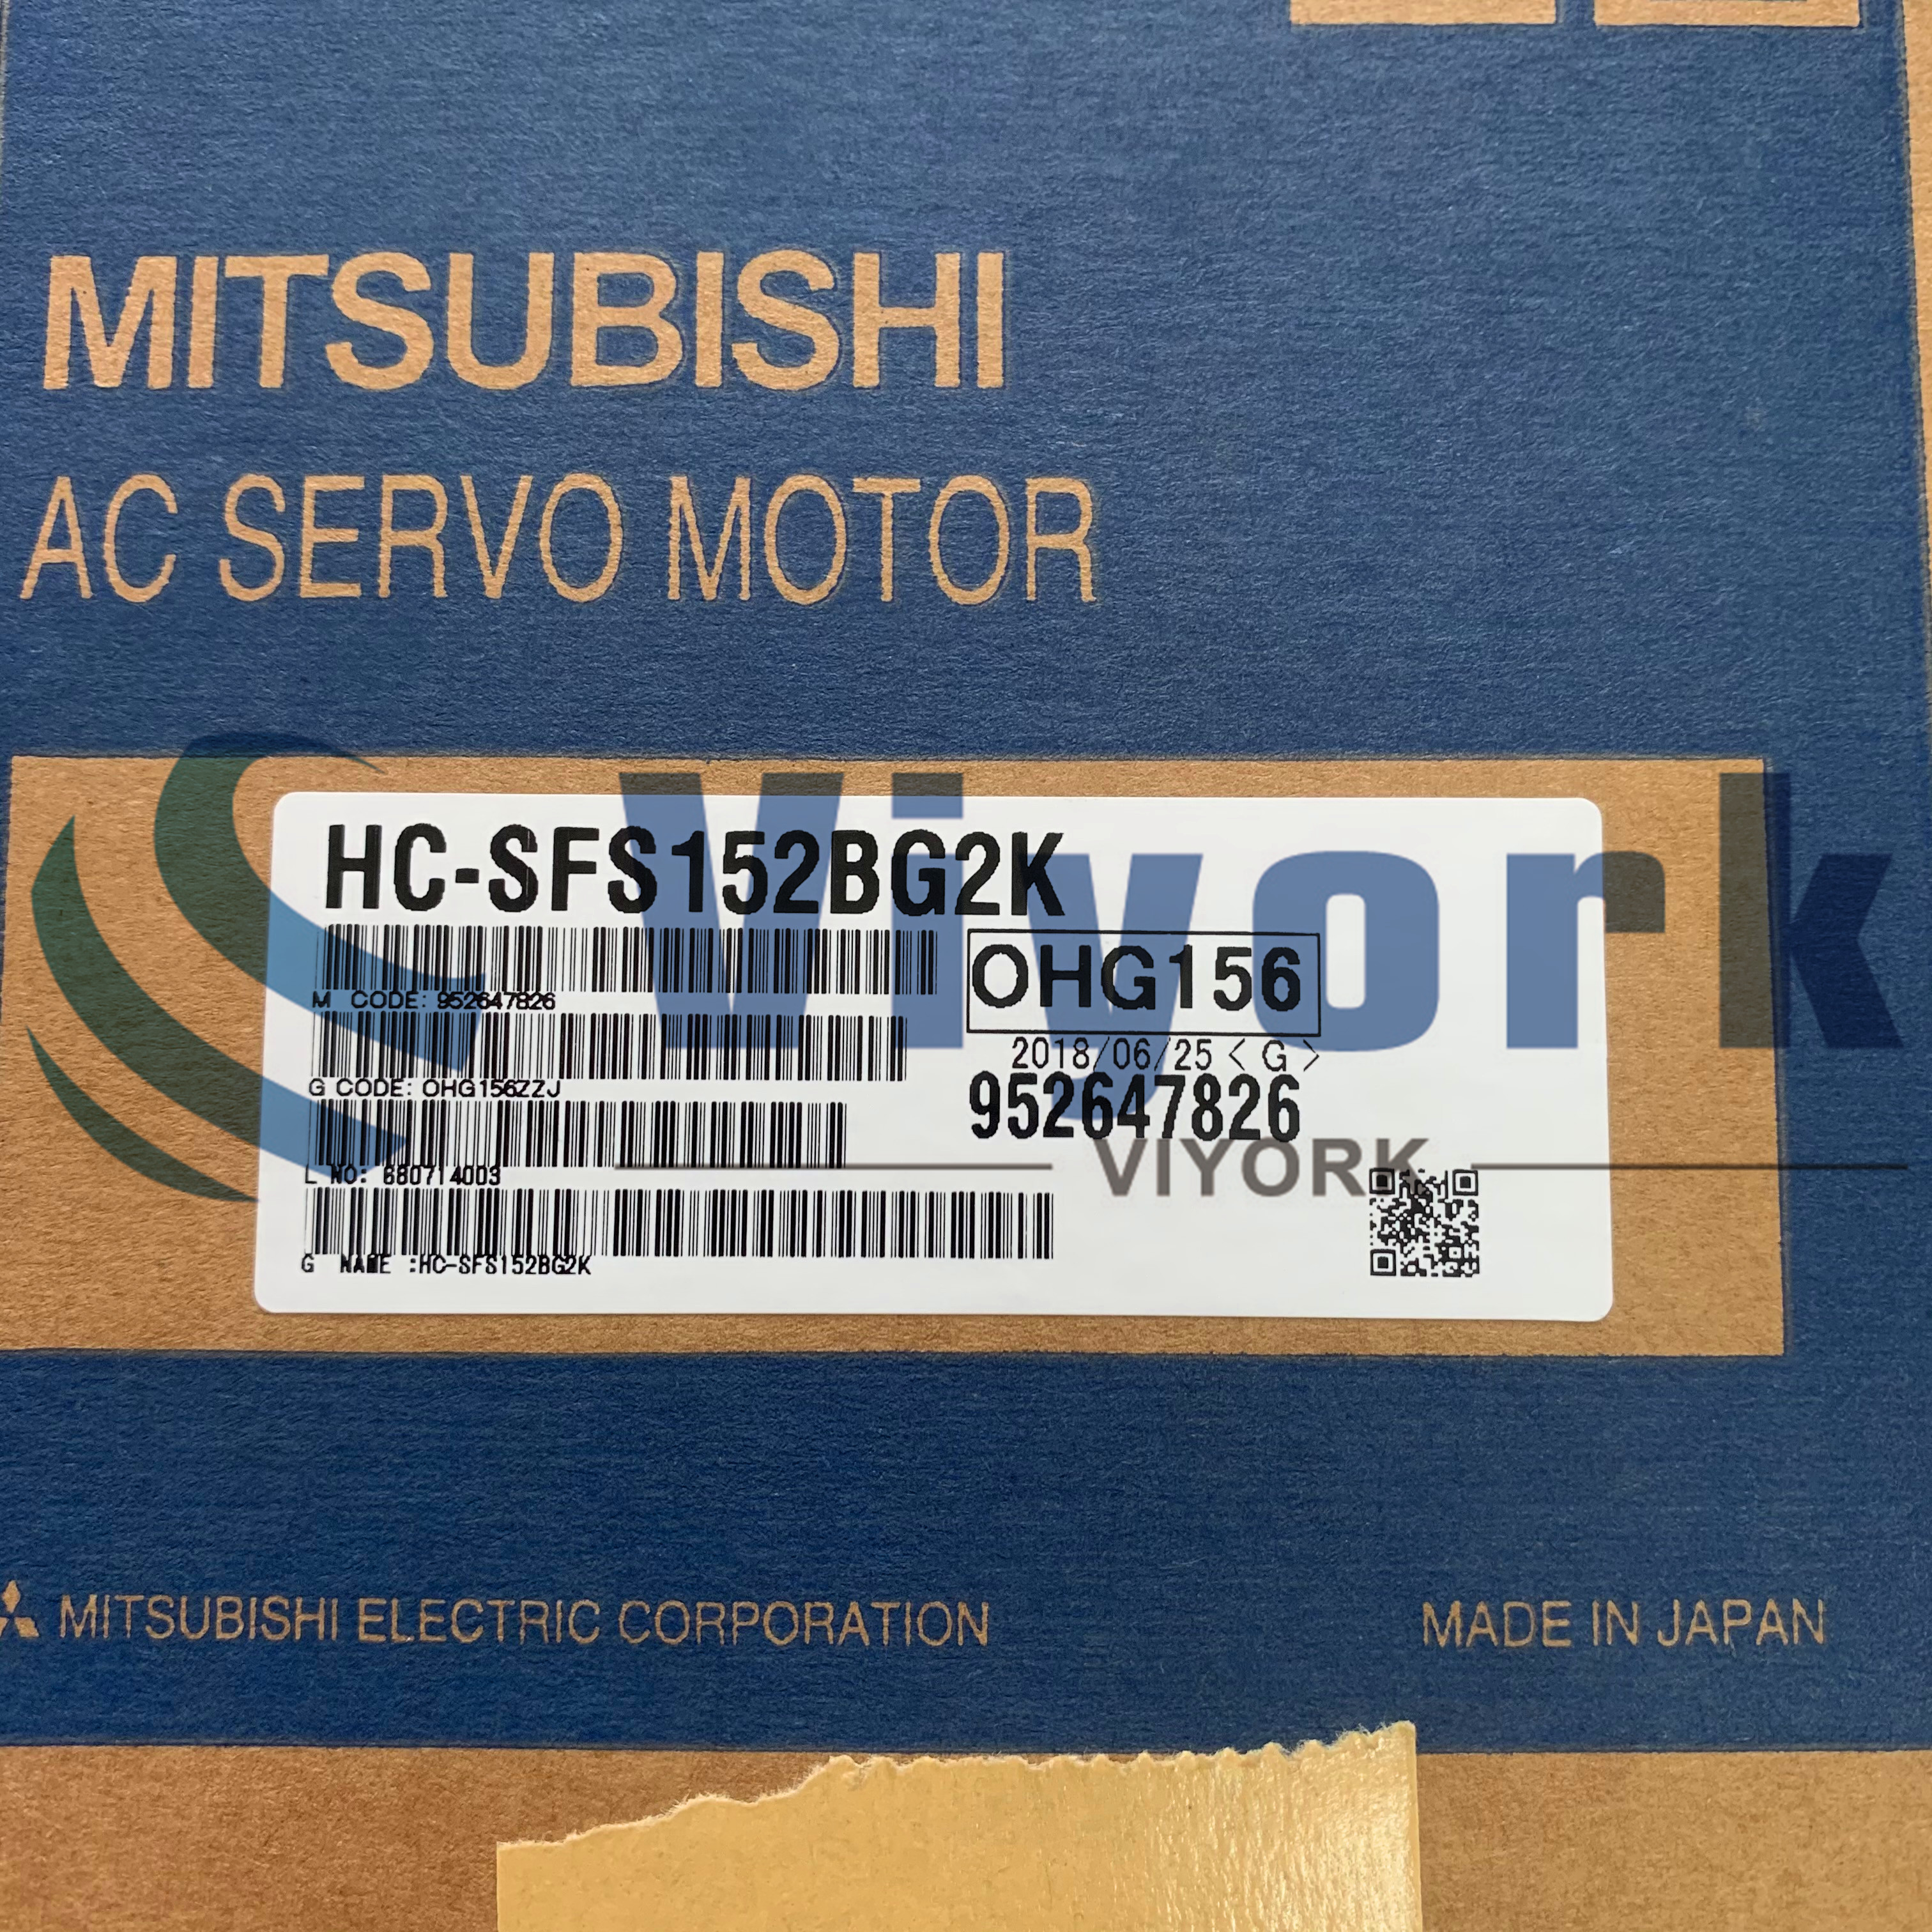 Mitsubishi HC-SFS152BG2K AC SERVO MOTOR 3AC 122V 9.0AMP 1.5KW 2000RPM NEW